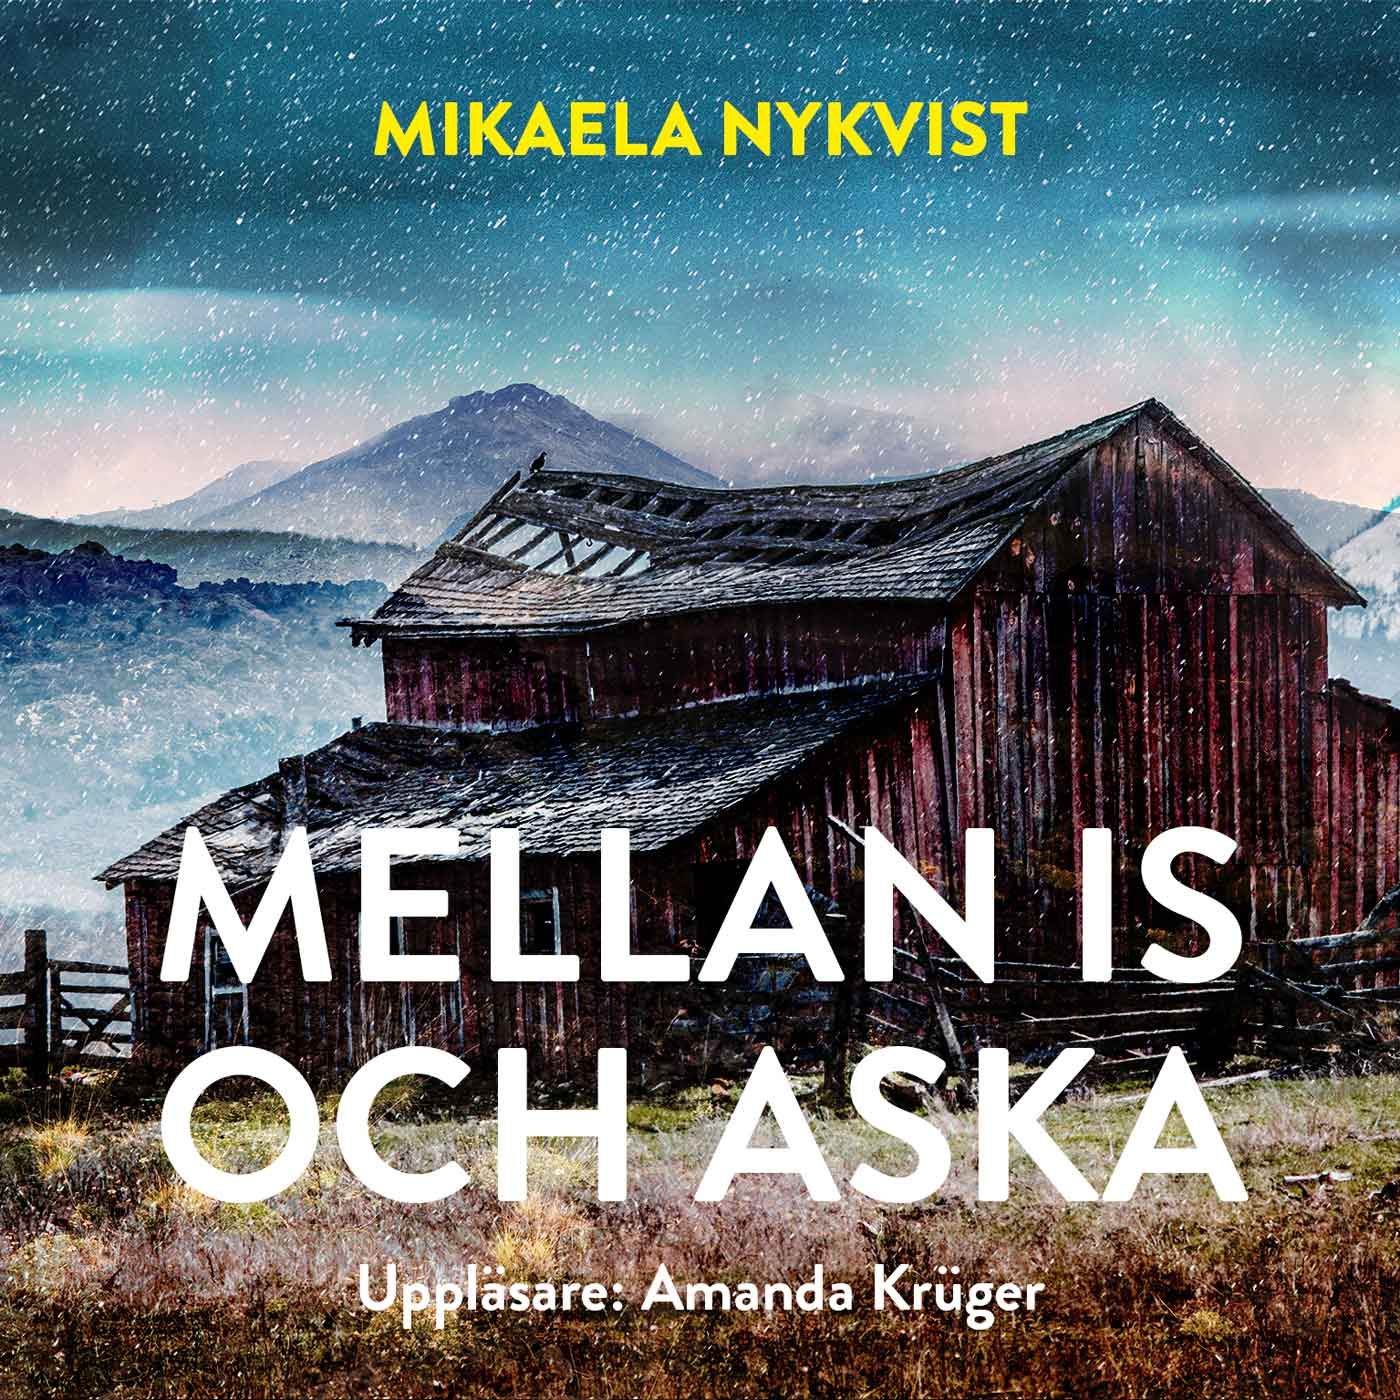 Mellan is och aska, eBook by Mikaela Nykvist